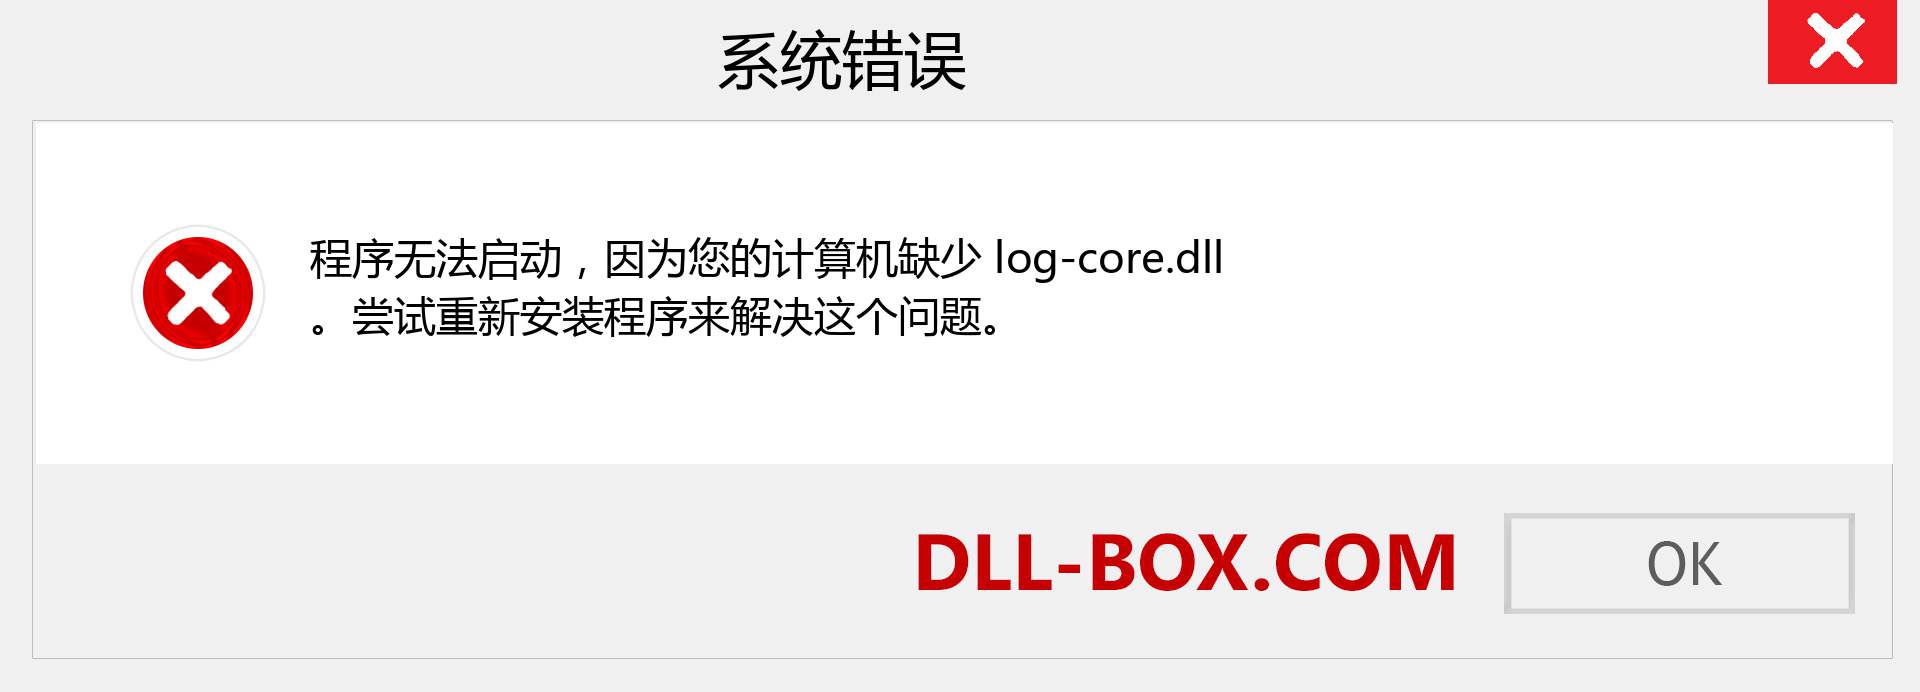 log-core.dll 文件丢失？。 适用于 Windows 7、8、10 的下载 - 修复 Windows、照片、图像上的 log-core dll 丢失错误